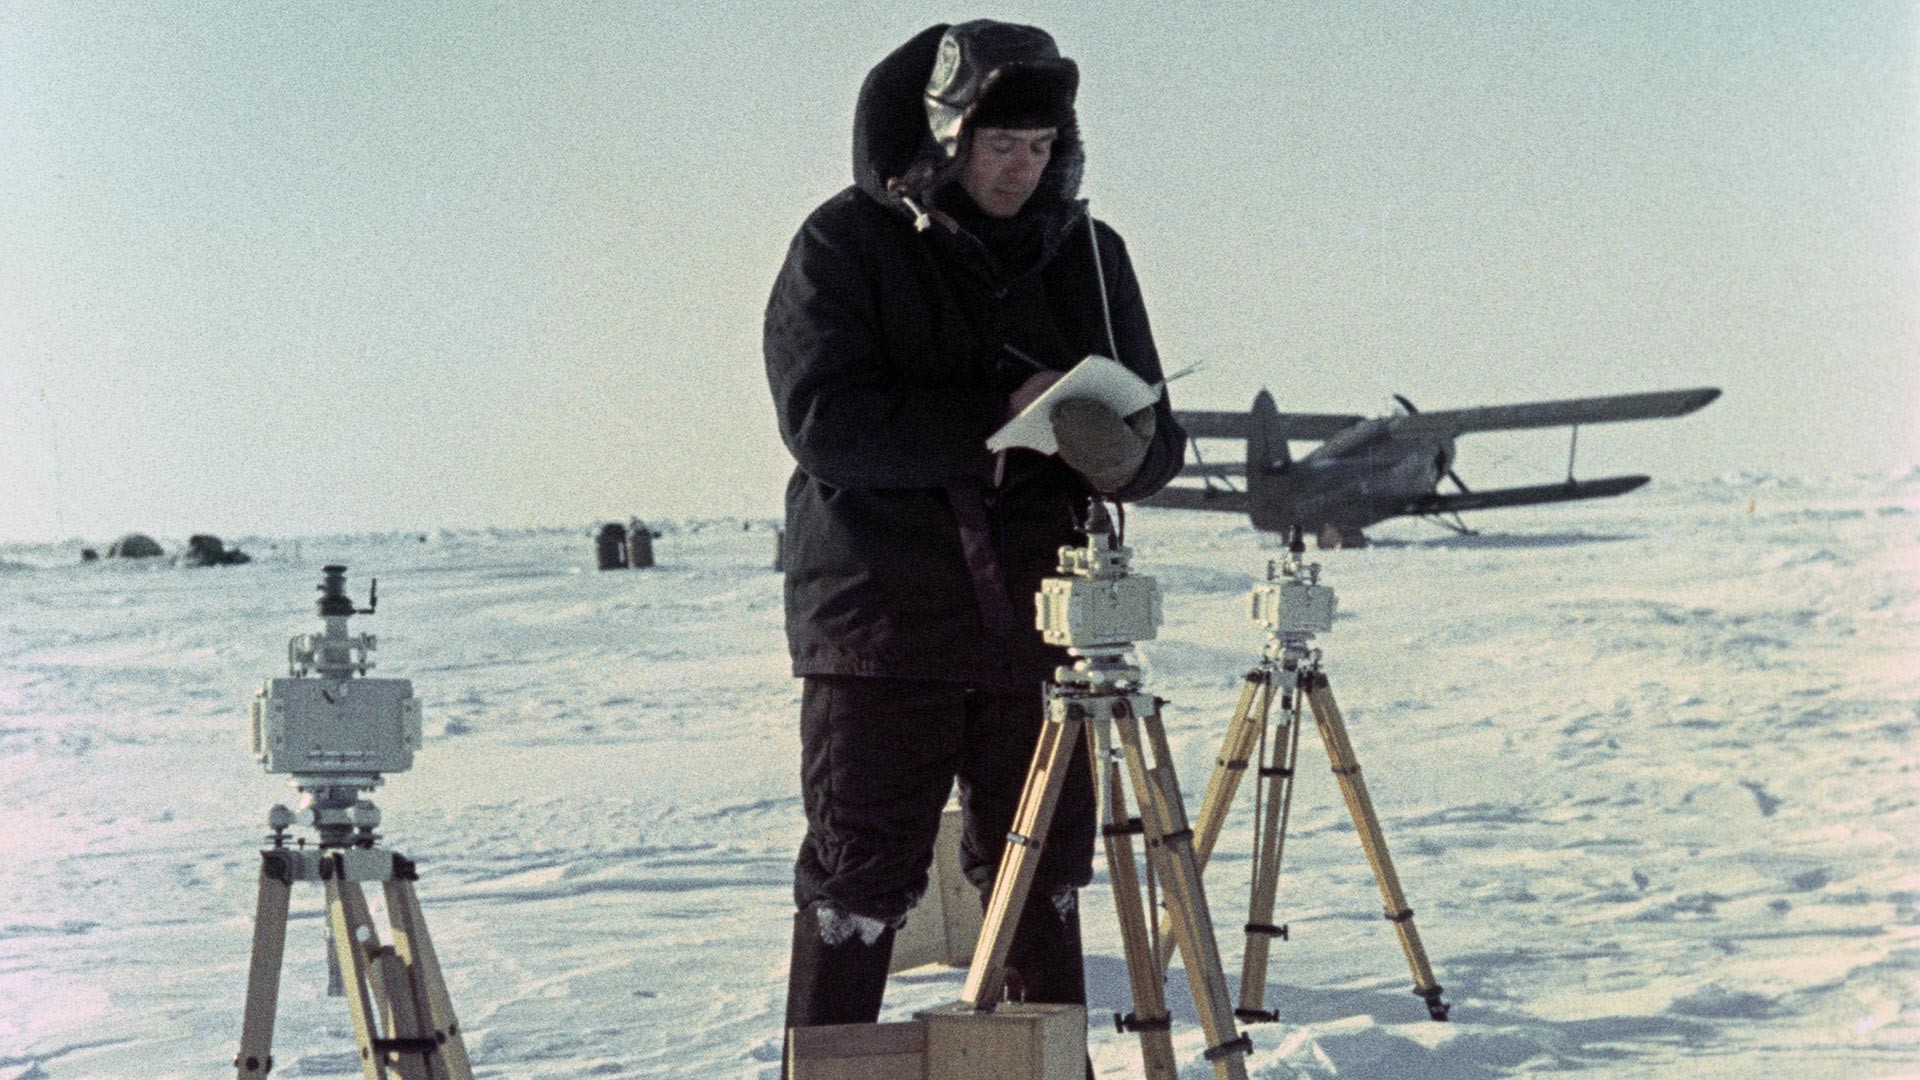 Soviet polar explorer at North Pole-8 station.